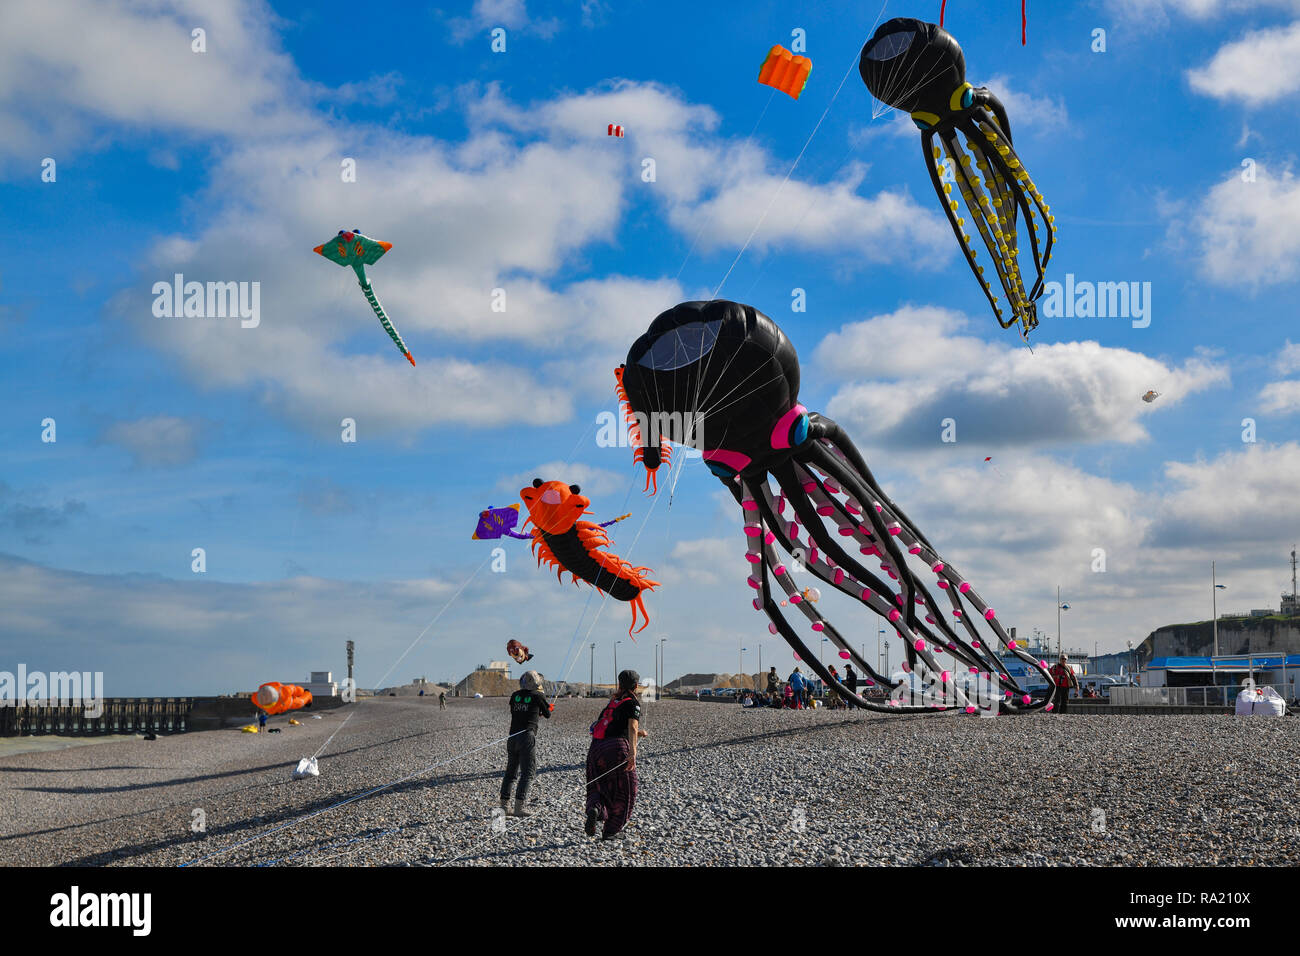 DIEPPE, FRANCE - SEPTEMBER 11, 2018: Kite festival. Octopus kites in the sky in Atlantic ocean Stock Photo